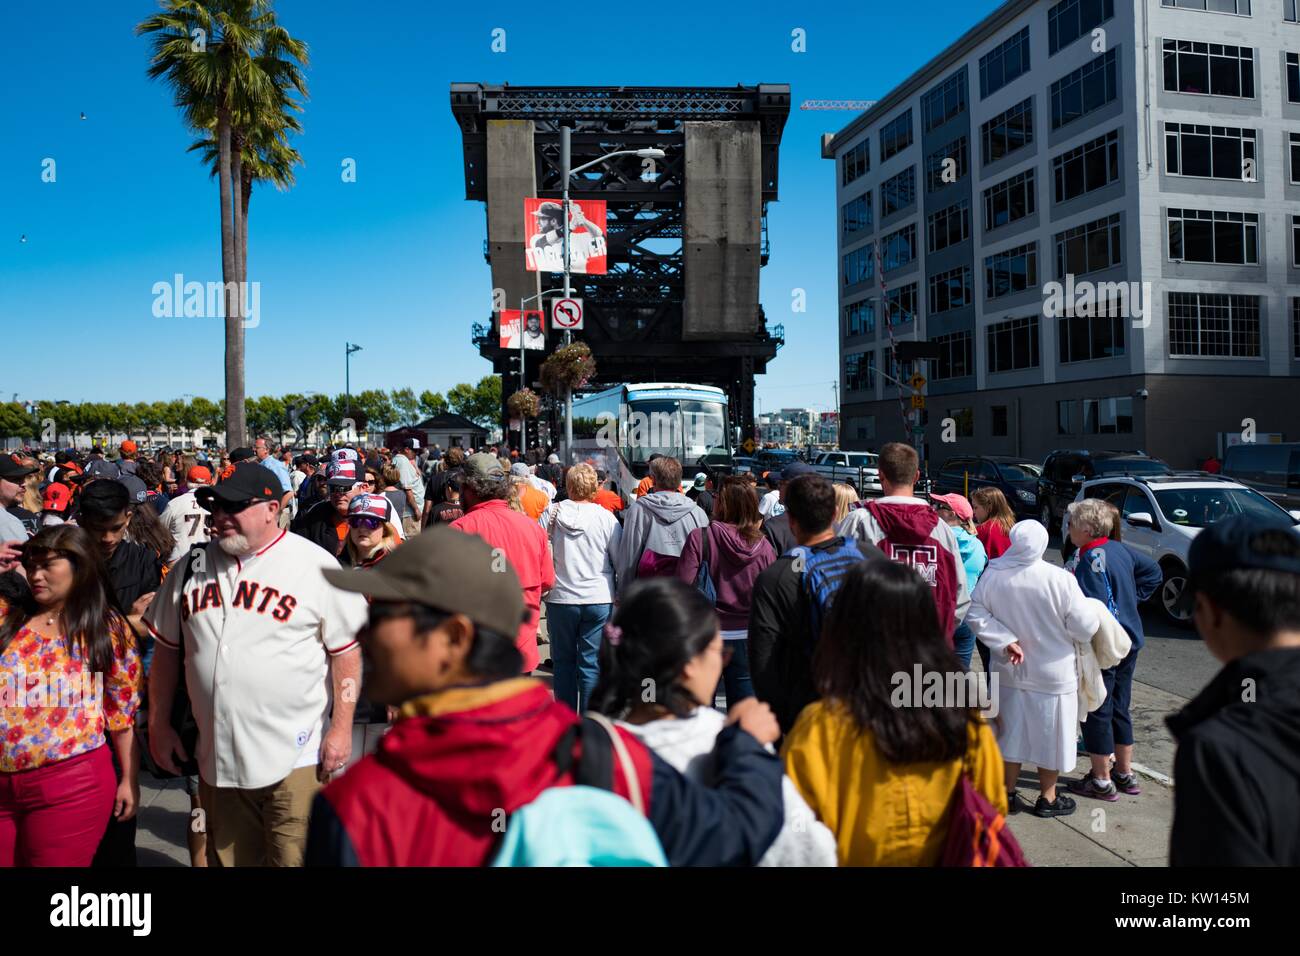 Außerhalb ATT Park Baseball Stadium im China Becken Viertel von San Francisco, Kalifornien, Fans der San Francisco Giants Baseball Team sammeln nach einem Spiel, San Francisco, Kalifornien, 2016. Stockfoto